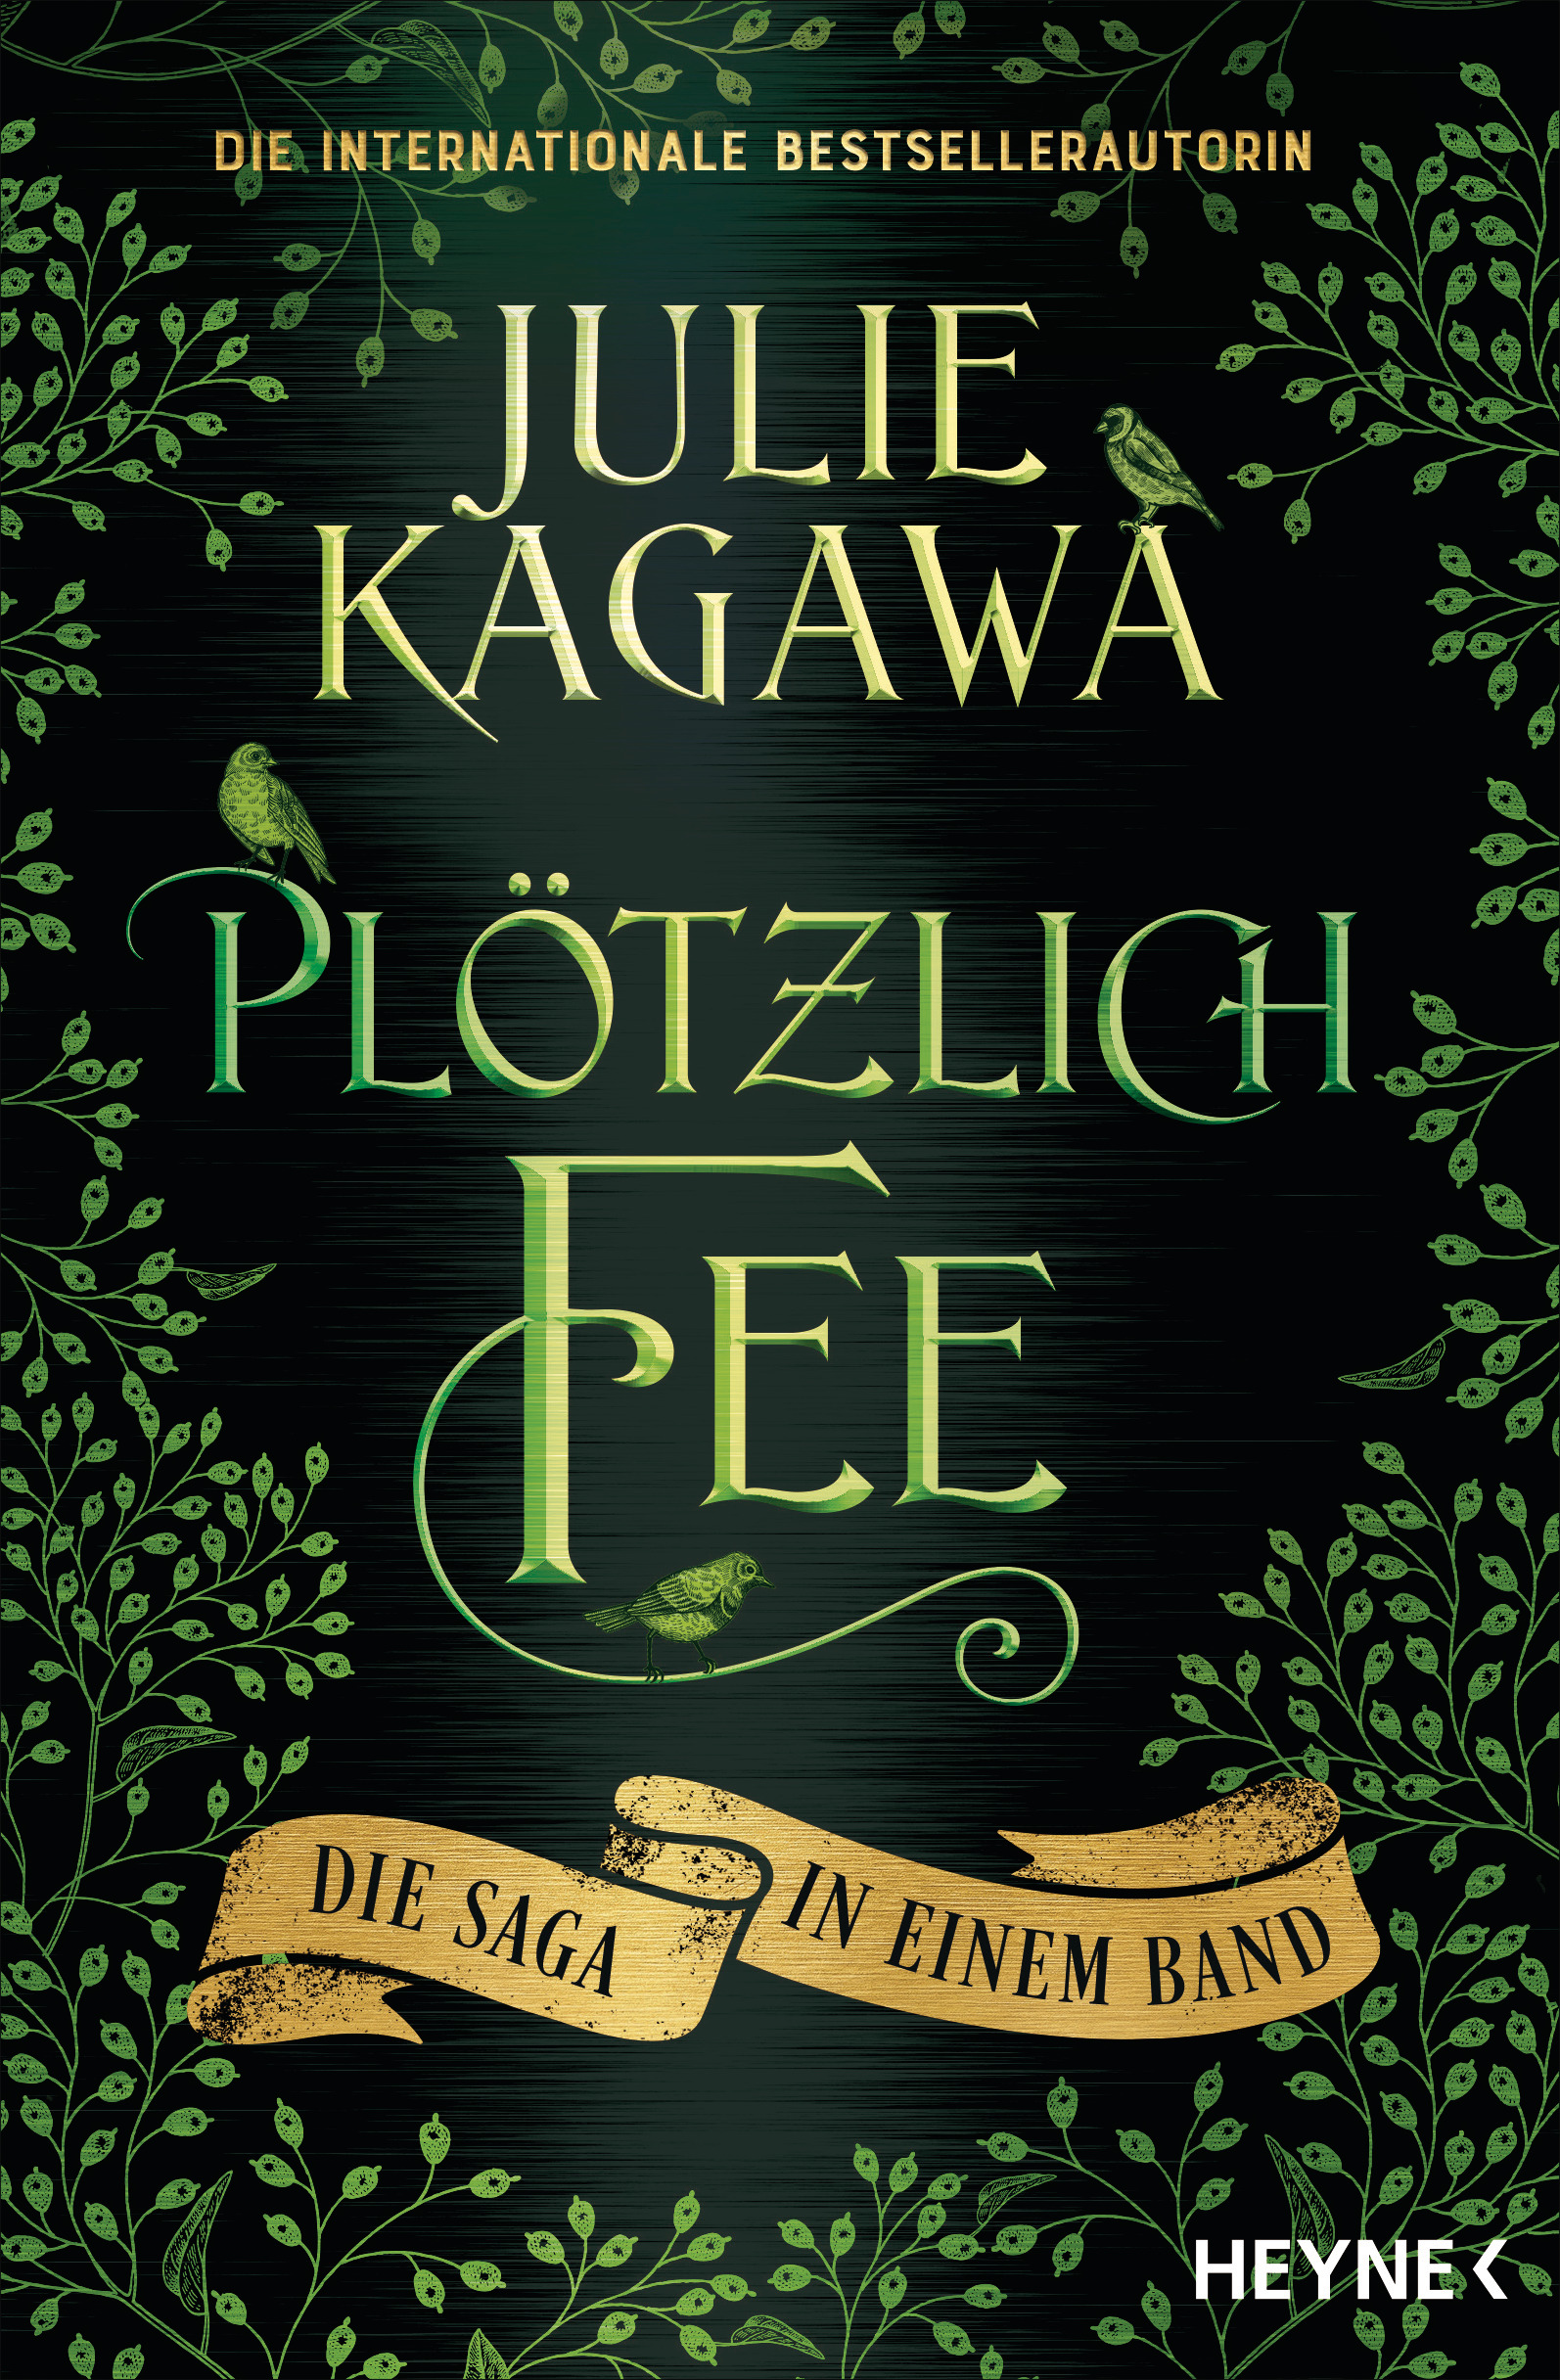 Bücherblog. Neuerscheinungen. Buchcover. Plötzlich Fee - Die Saga in einem Band von Julie Kagawa. Fantasy. Jugendbuch. Heyne.